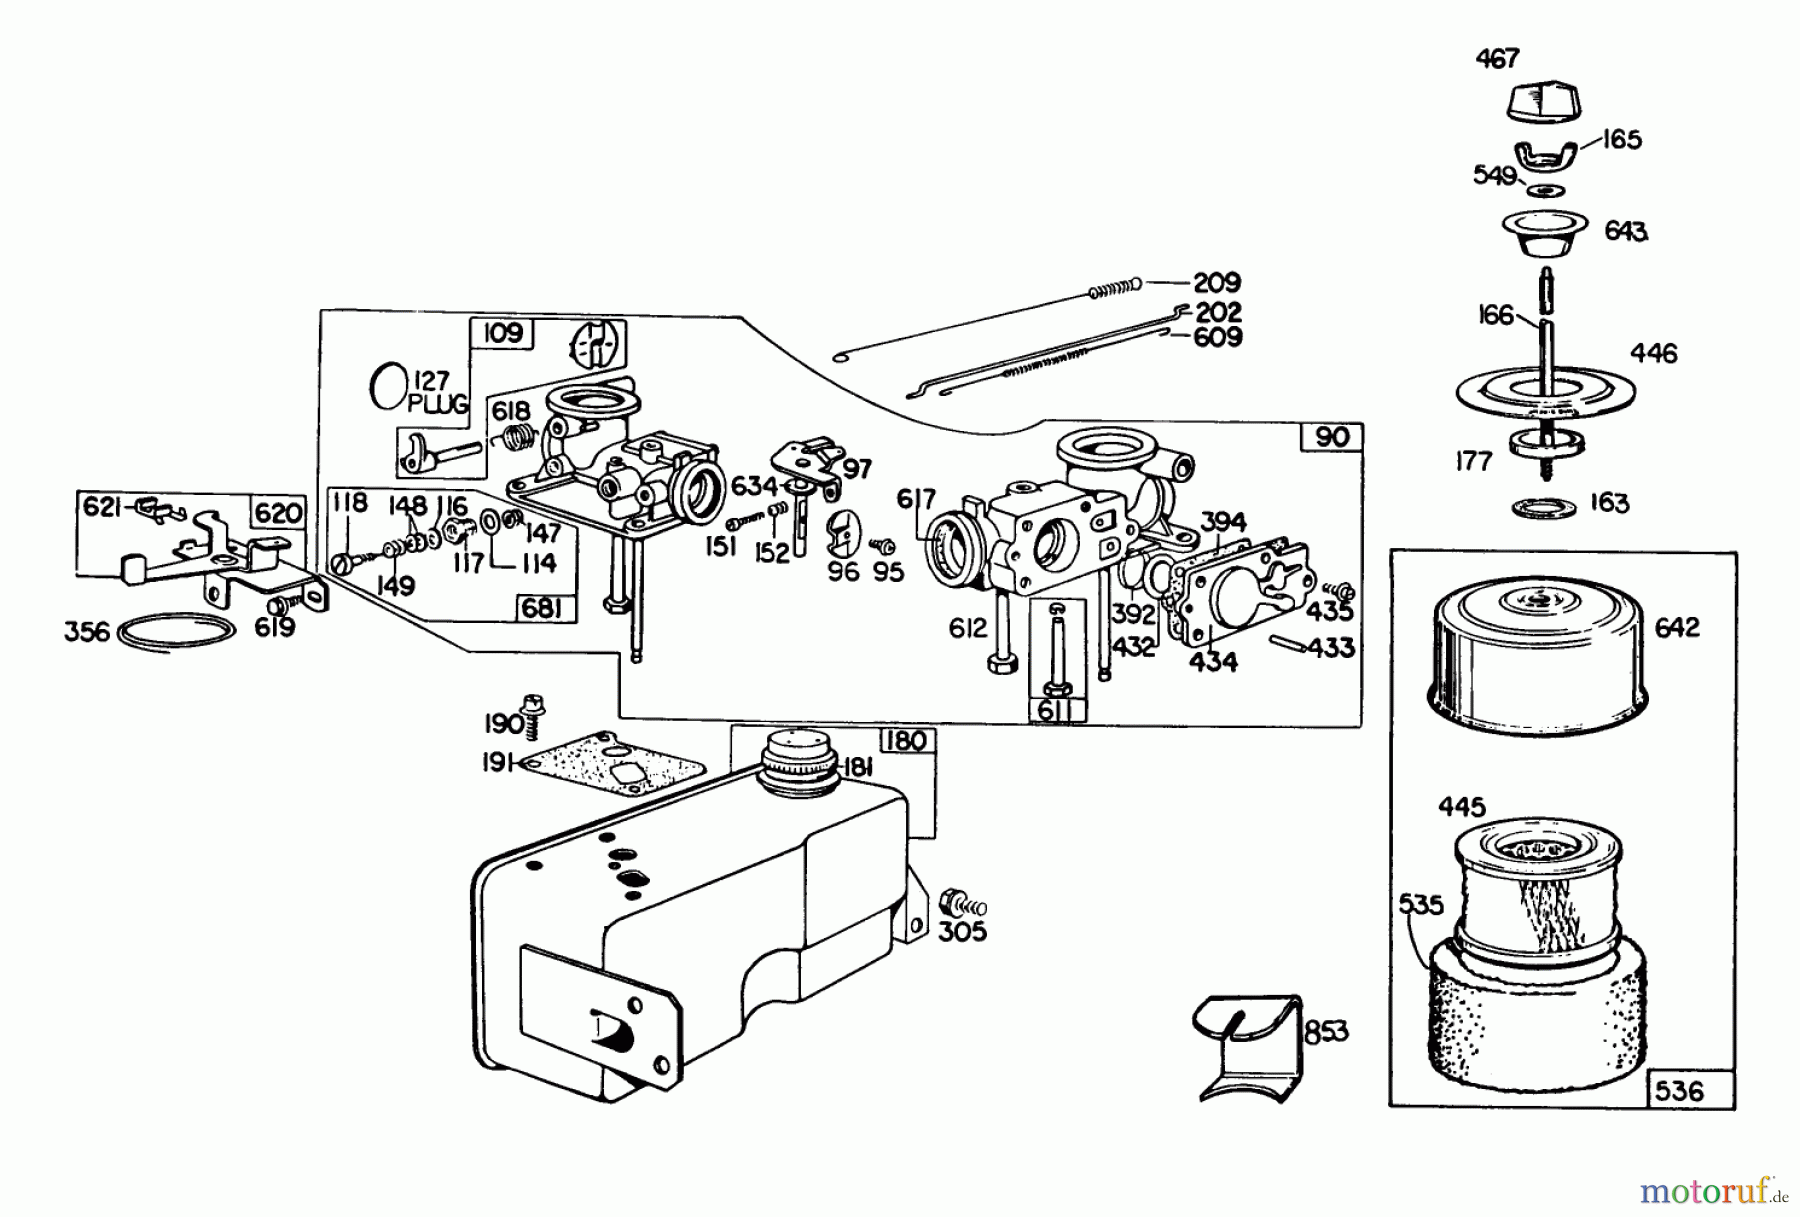  Toro Neu Mowers, Walk-Behind Seite 2 23158 - Toro Lawnmower, 1980 (0000001-0999999) ENGINE BRIGGS & STRATTON MODEL 130902-0543-01 #2